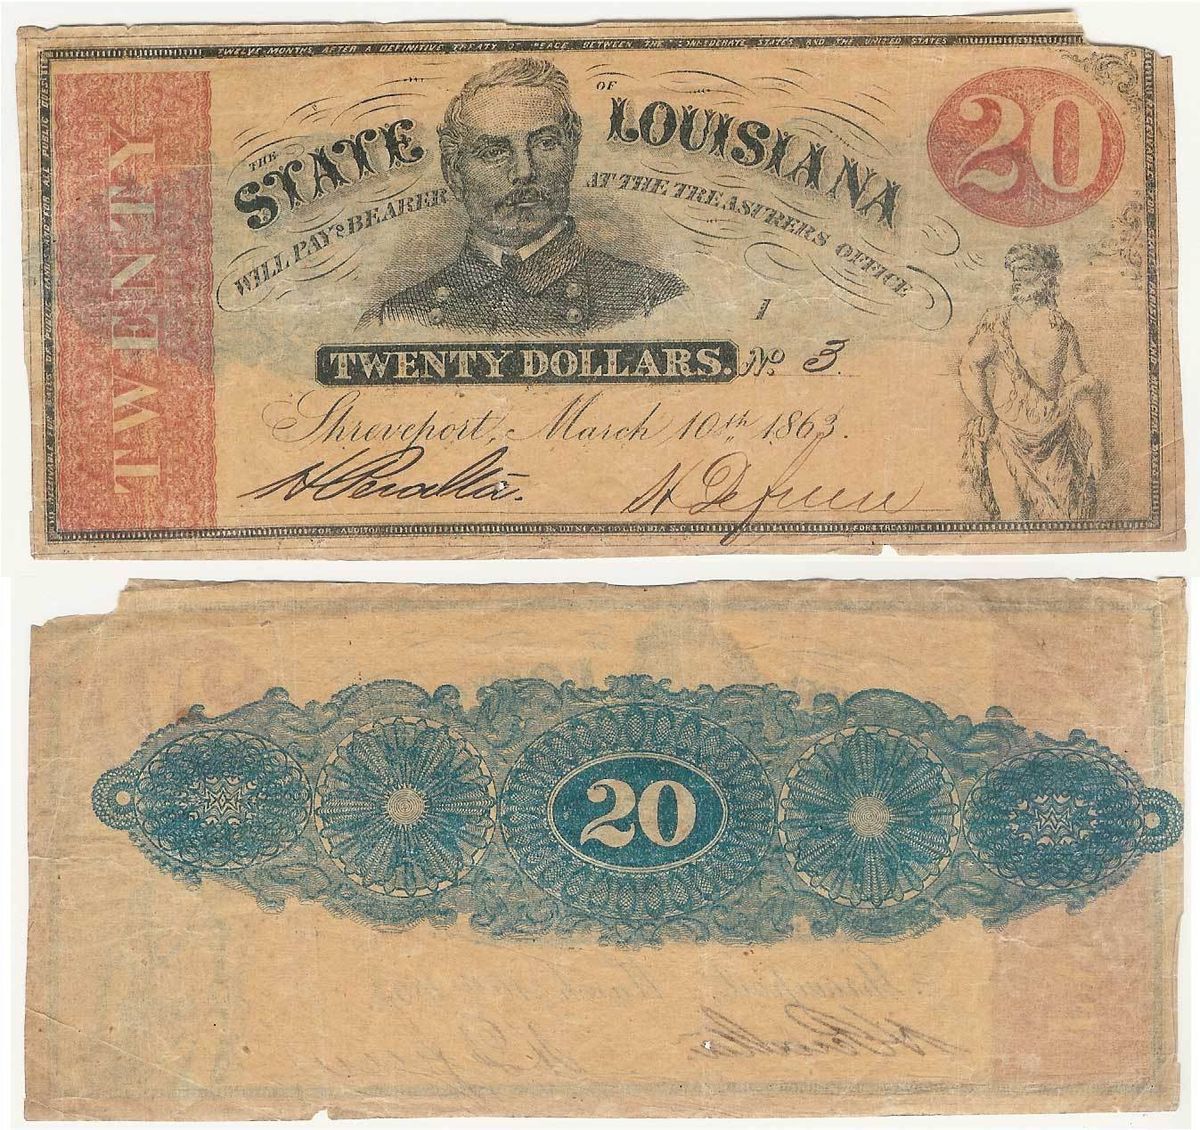 Louisiana CSA Currency 20 GENERAL P G T BEAUREGARD 1863 SERIAL 3